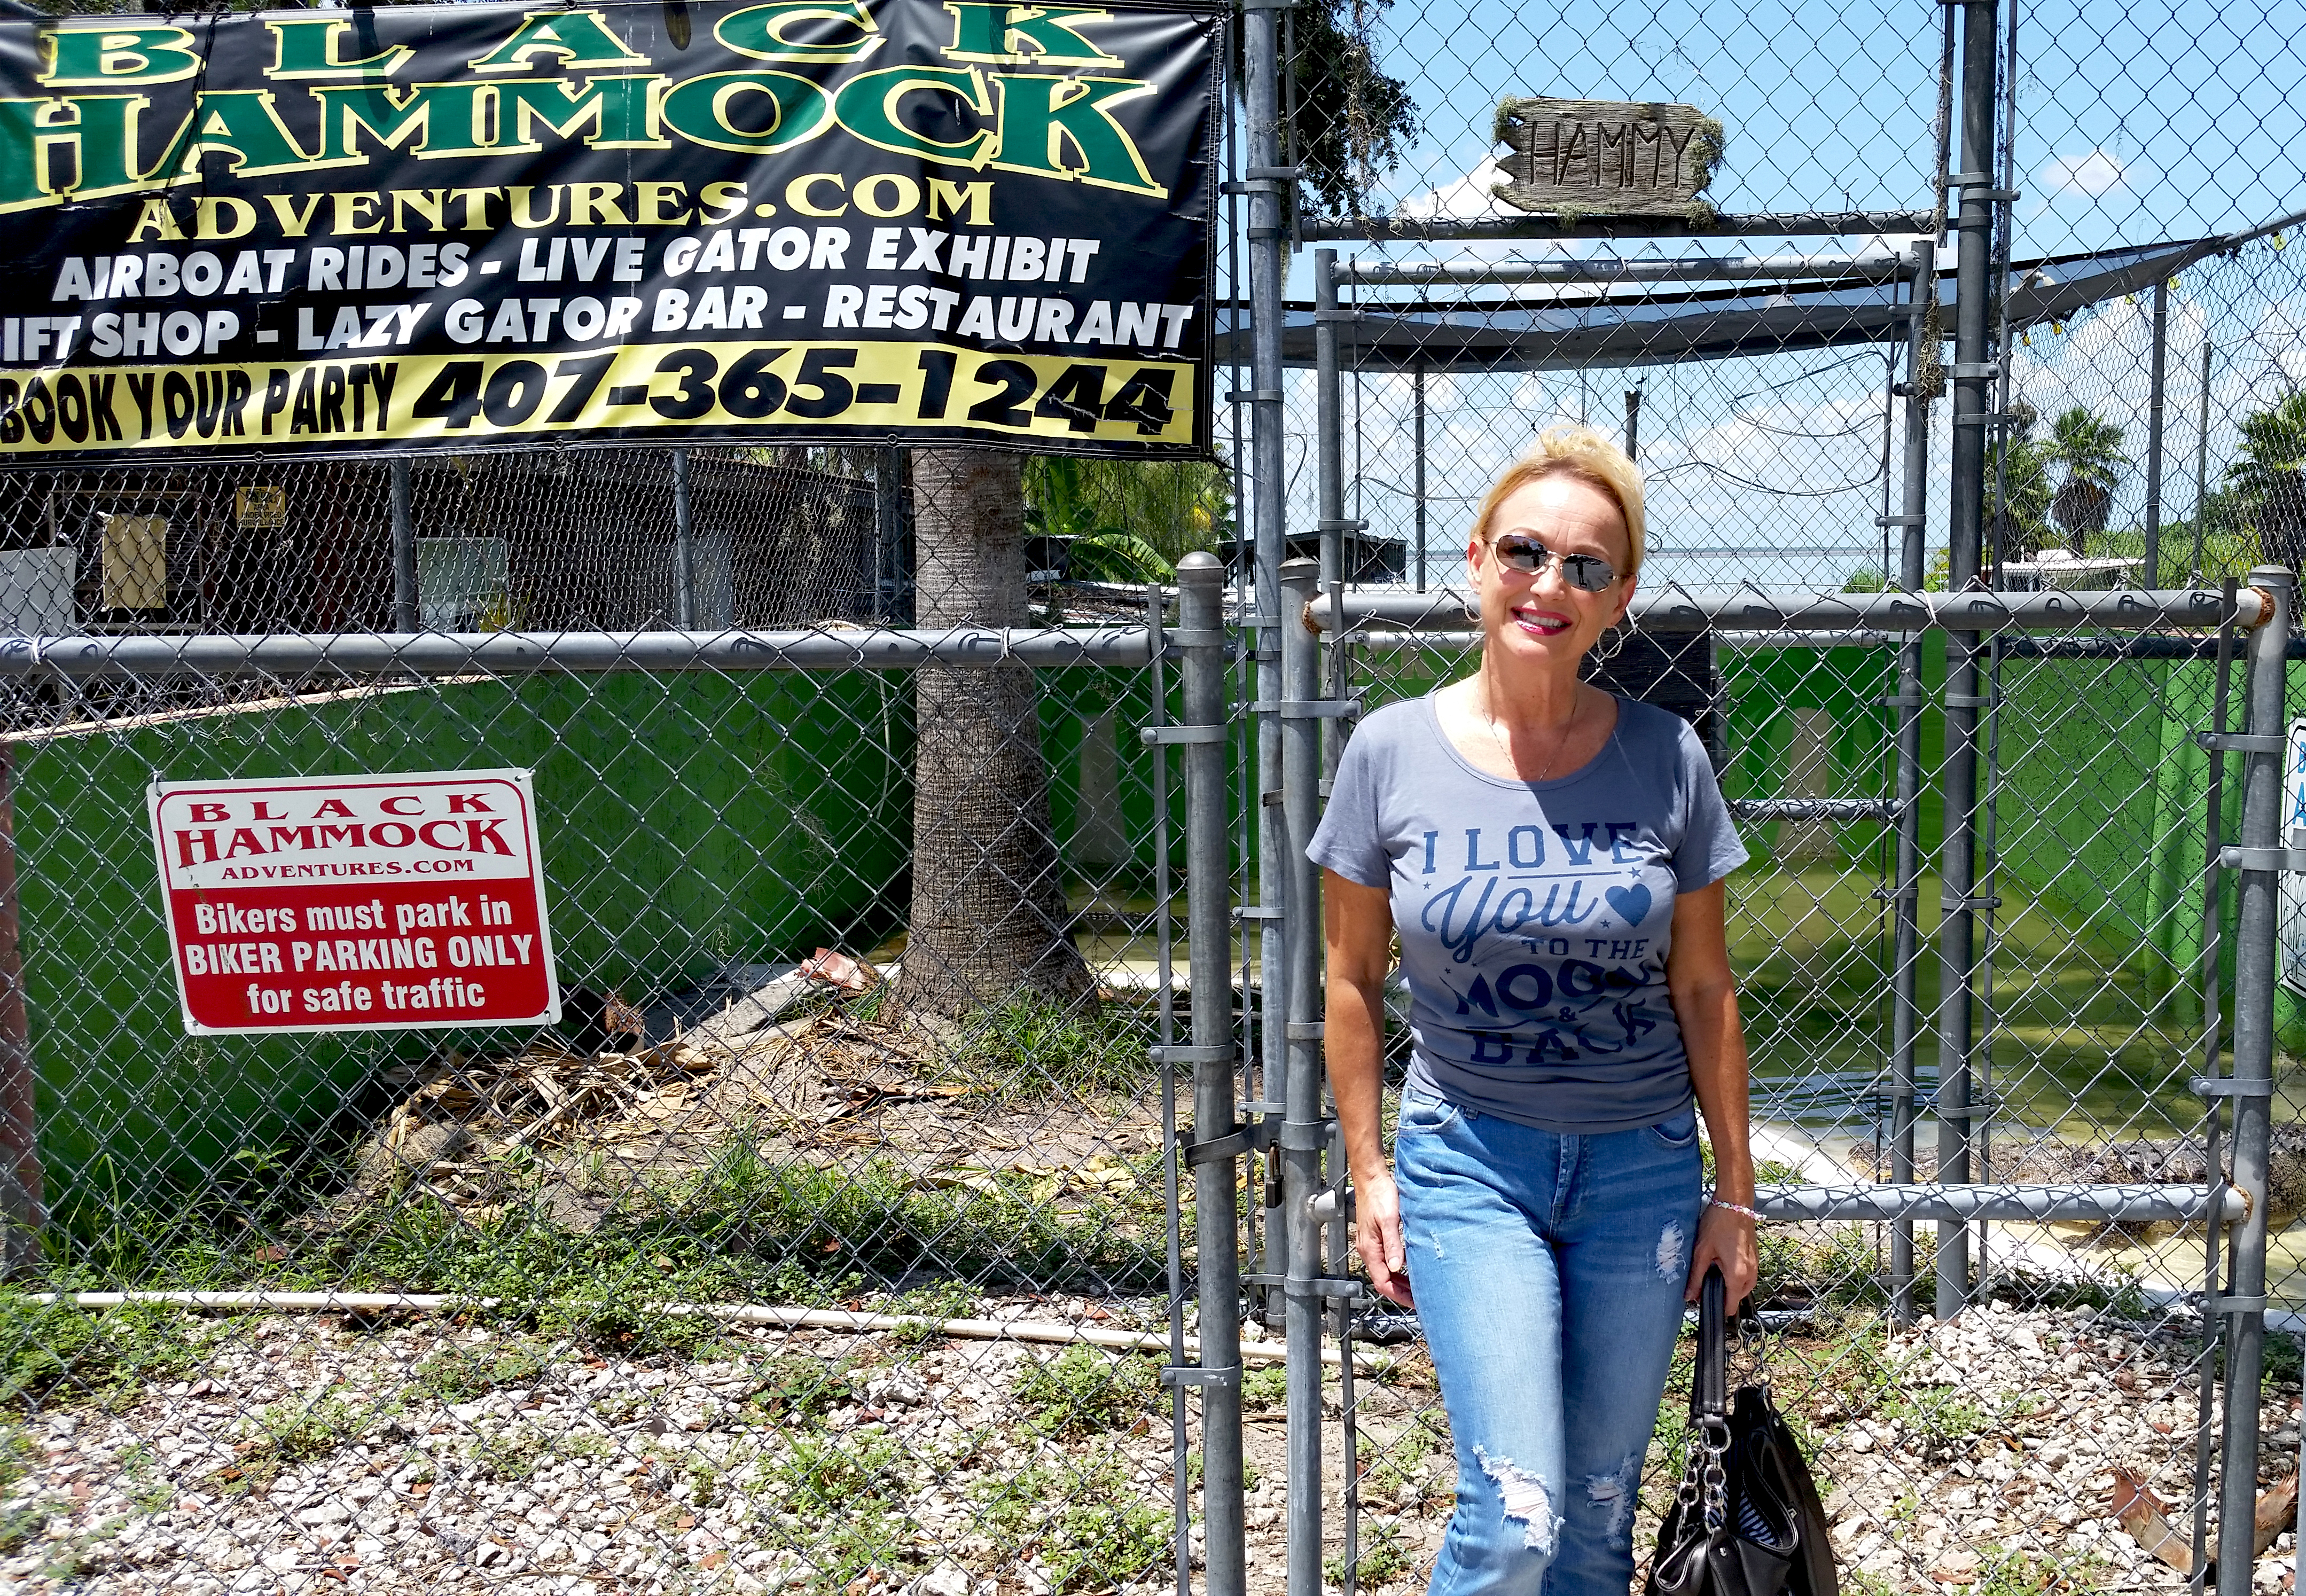 Florida's Alligator Adventure